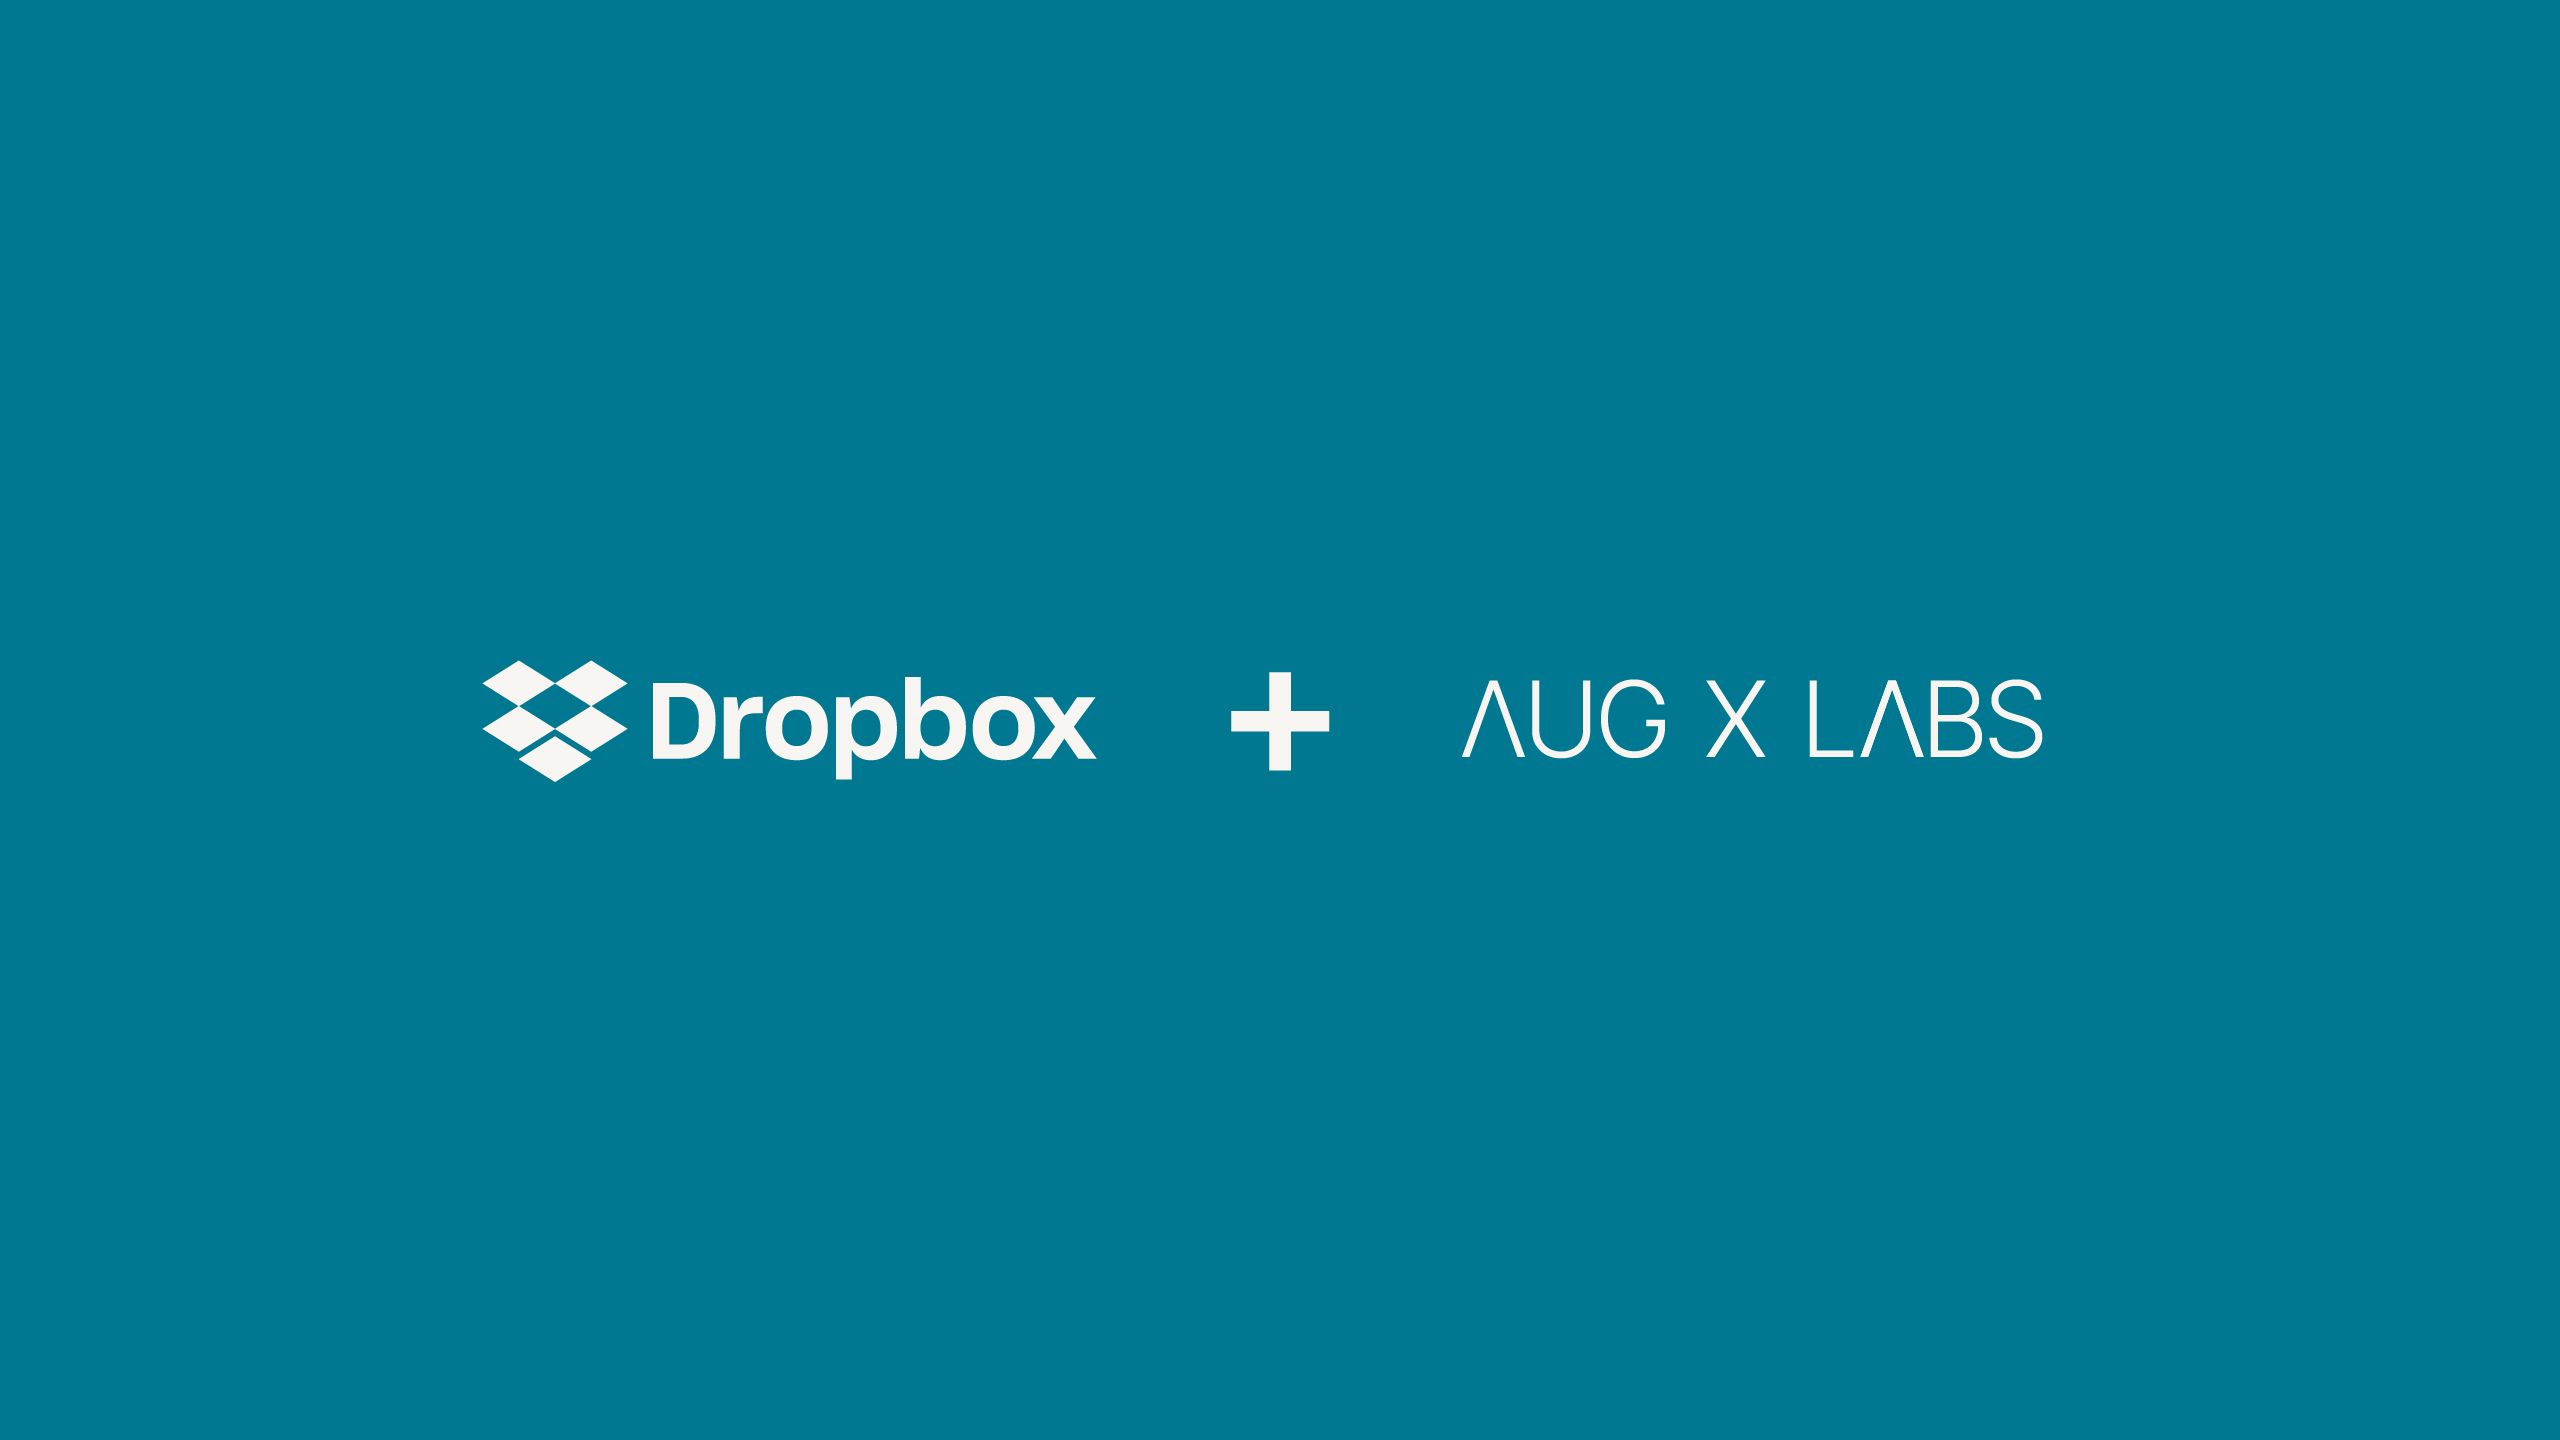 โลโก้ความร่วมมือของ Dropbox และ AugX Labs  